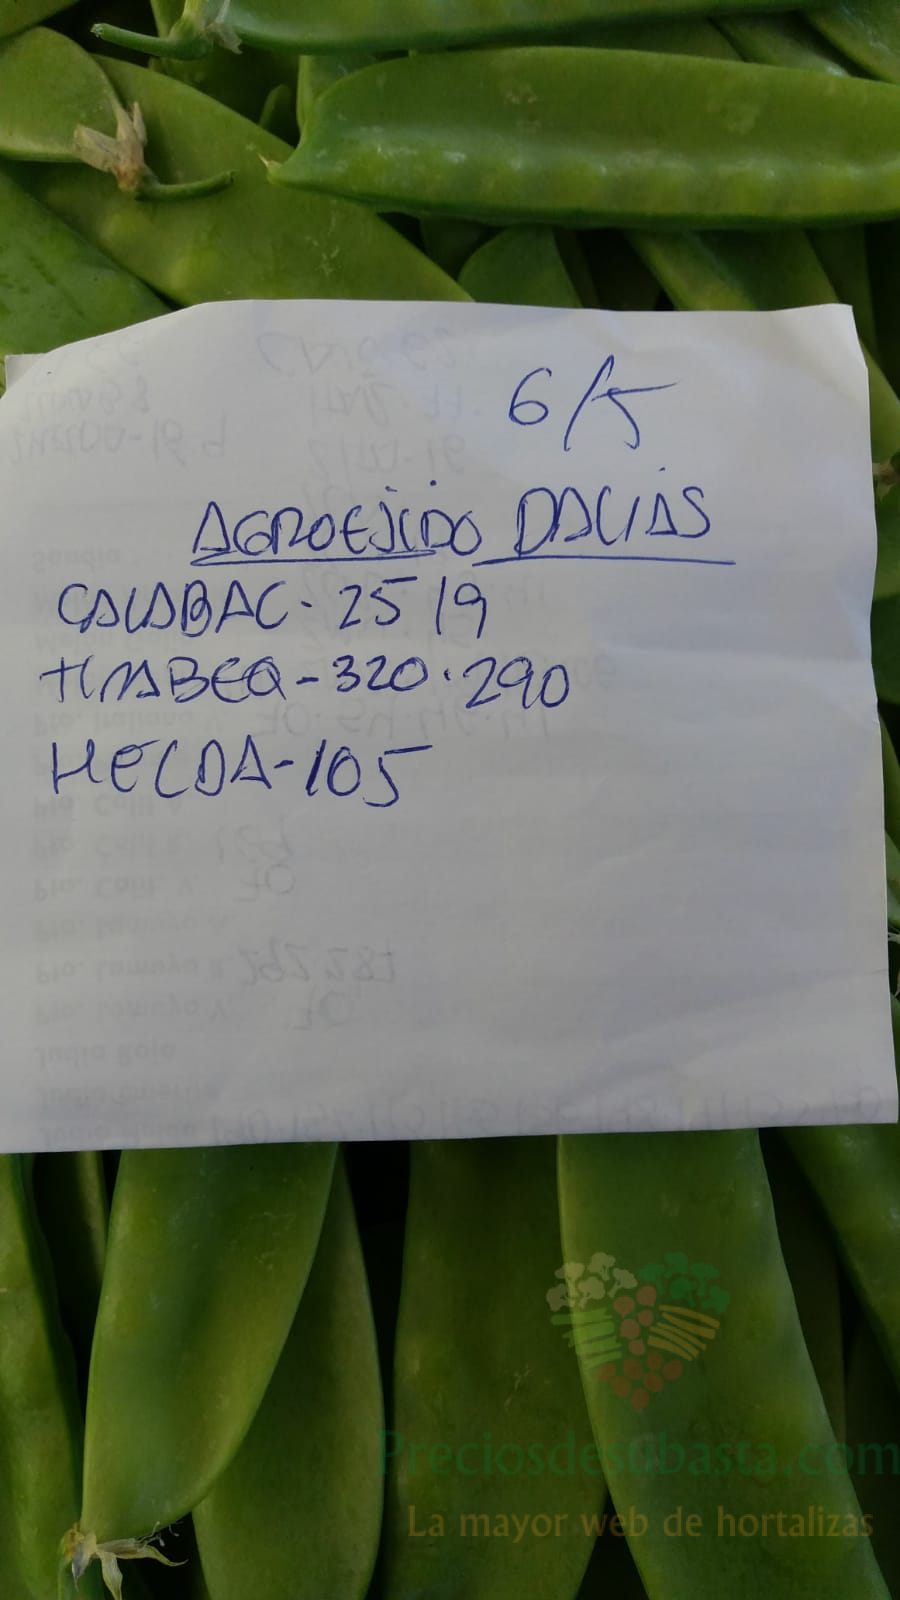 Subasta hortofrutícola AgroEjido Dalias 6 de mayo 2020